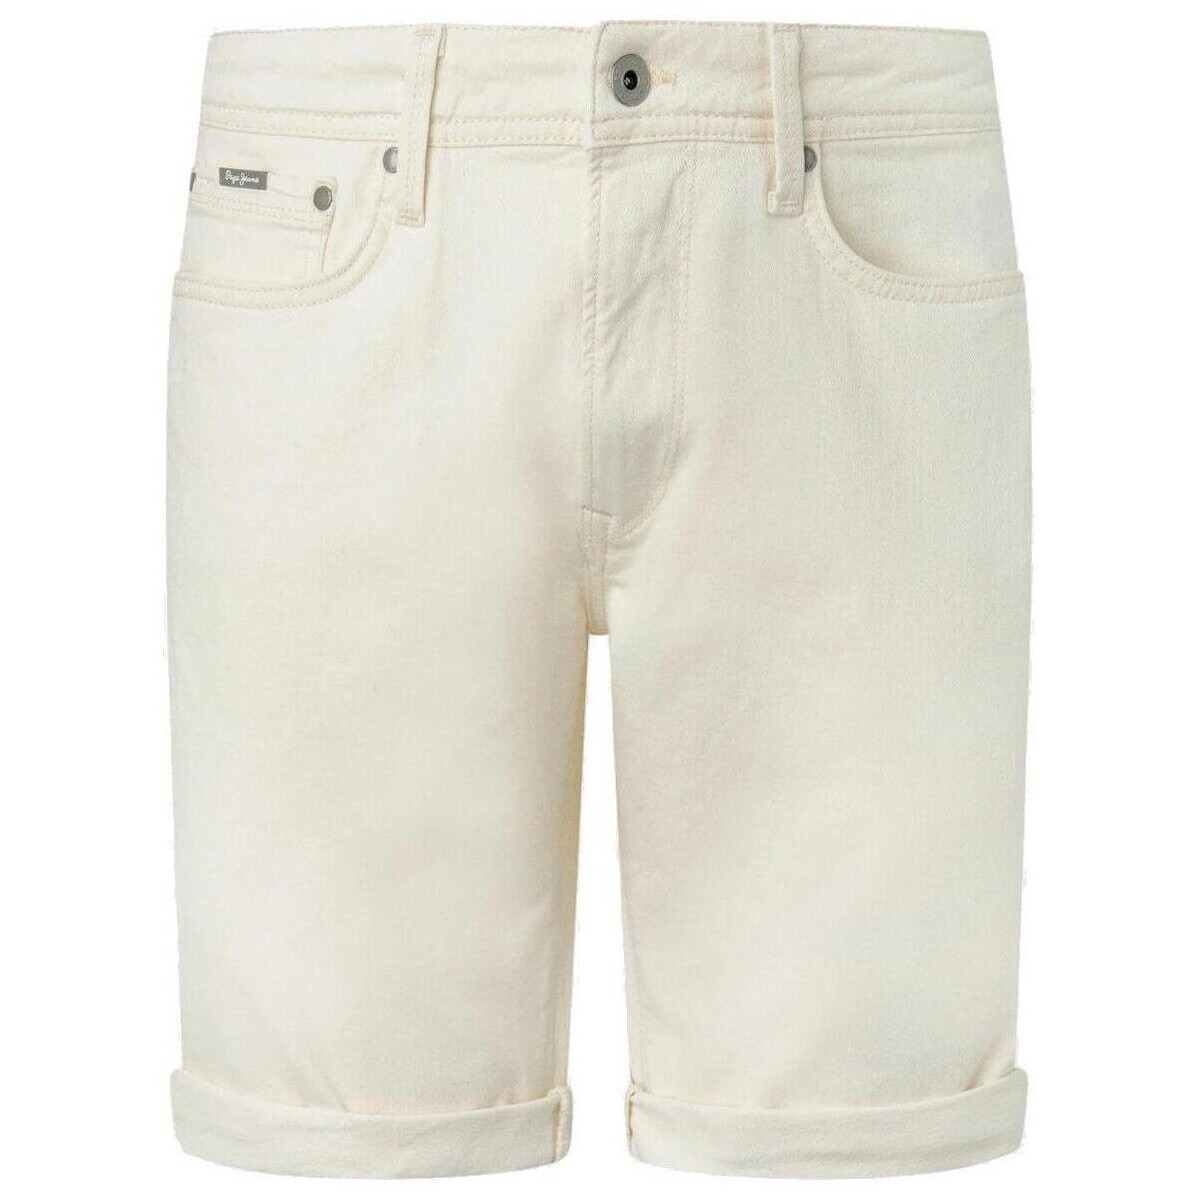 Textiel Heren Korte broeken / Bermuda's Pepe jeans  Wit